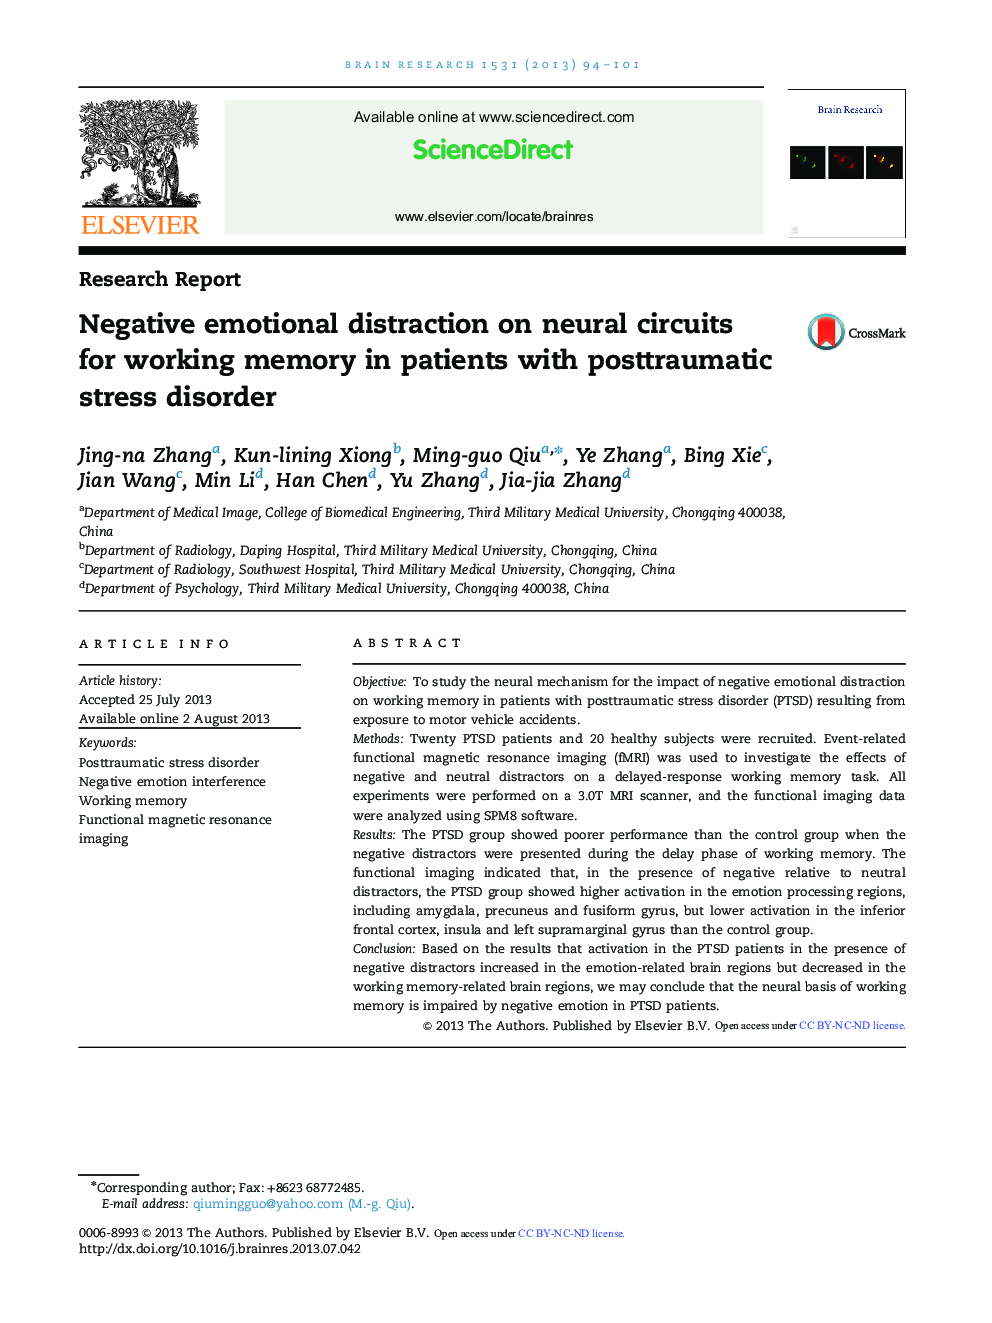 گزارش تحقیقات حواسپرتی هیجانی ناشی از مداخلات عصبی برای حافظه کاری در بیماران مبتلا به اختلال استرس پس از سانحه 